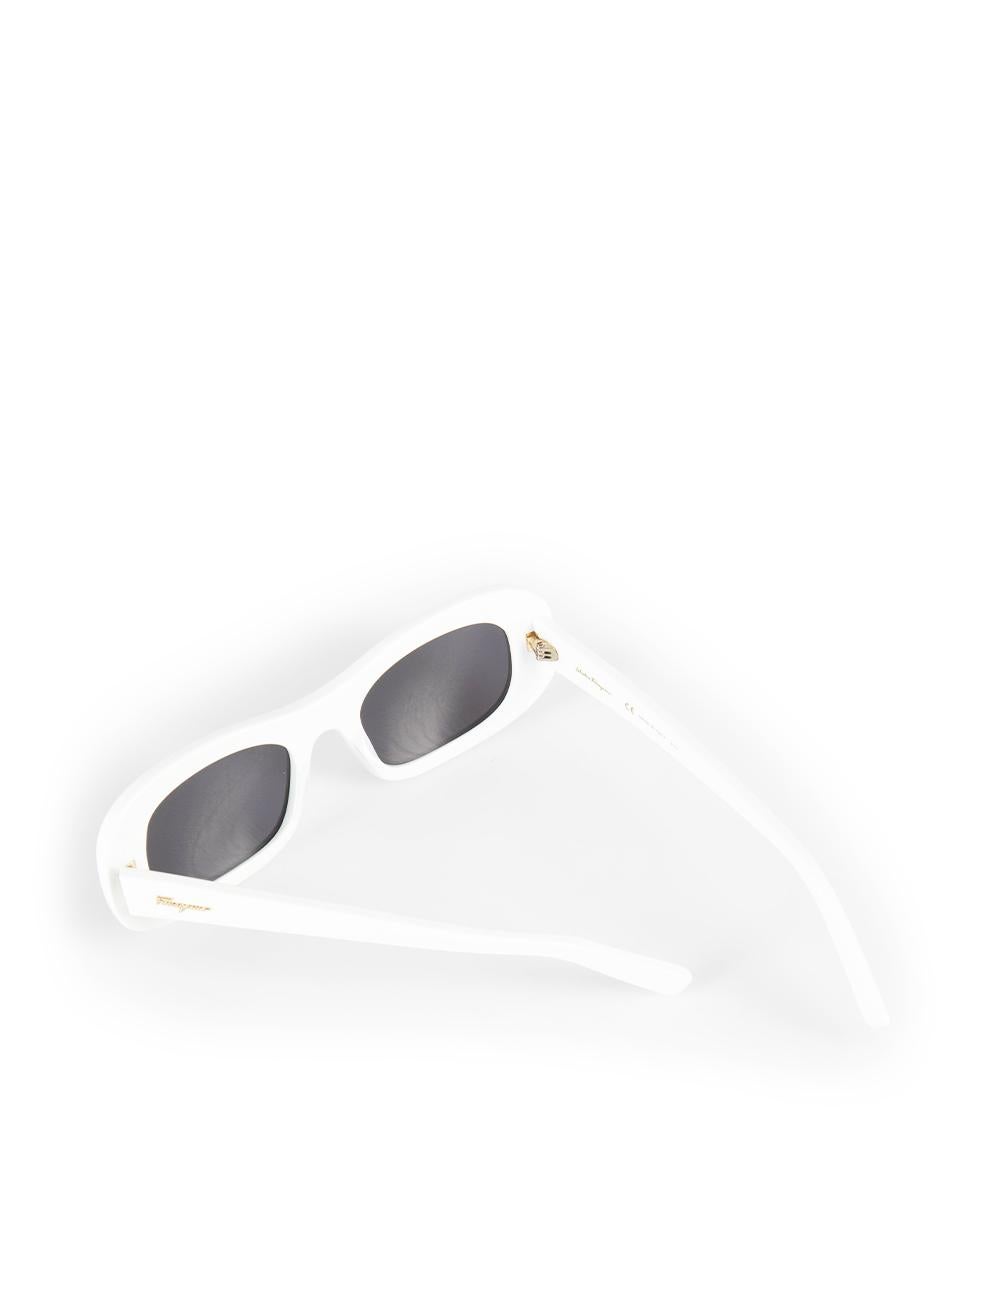 Salvatore Ferragamo White Rectangle Frame Sunglasses For Sale 3